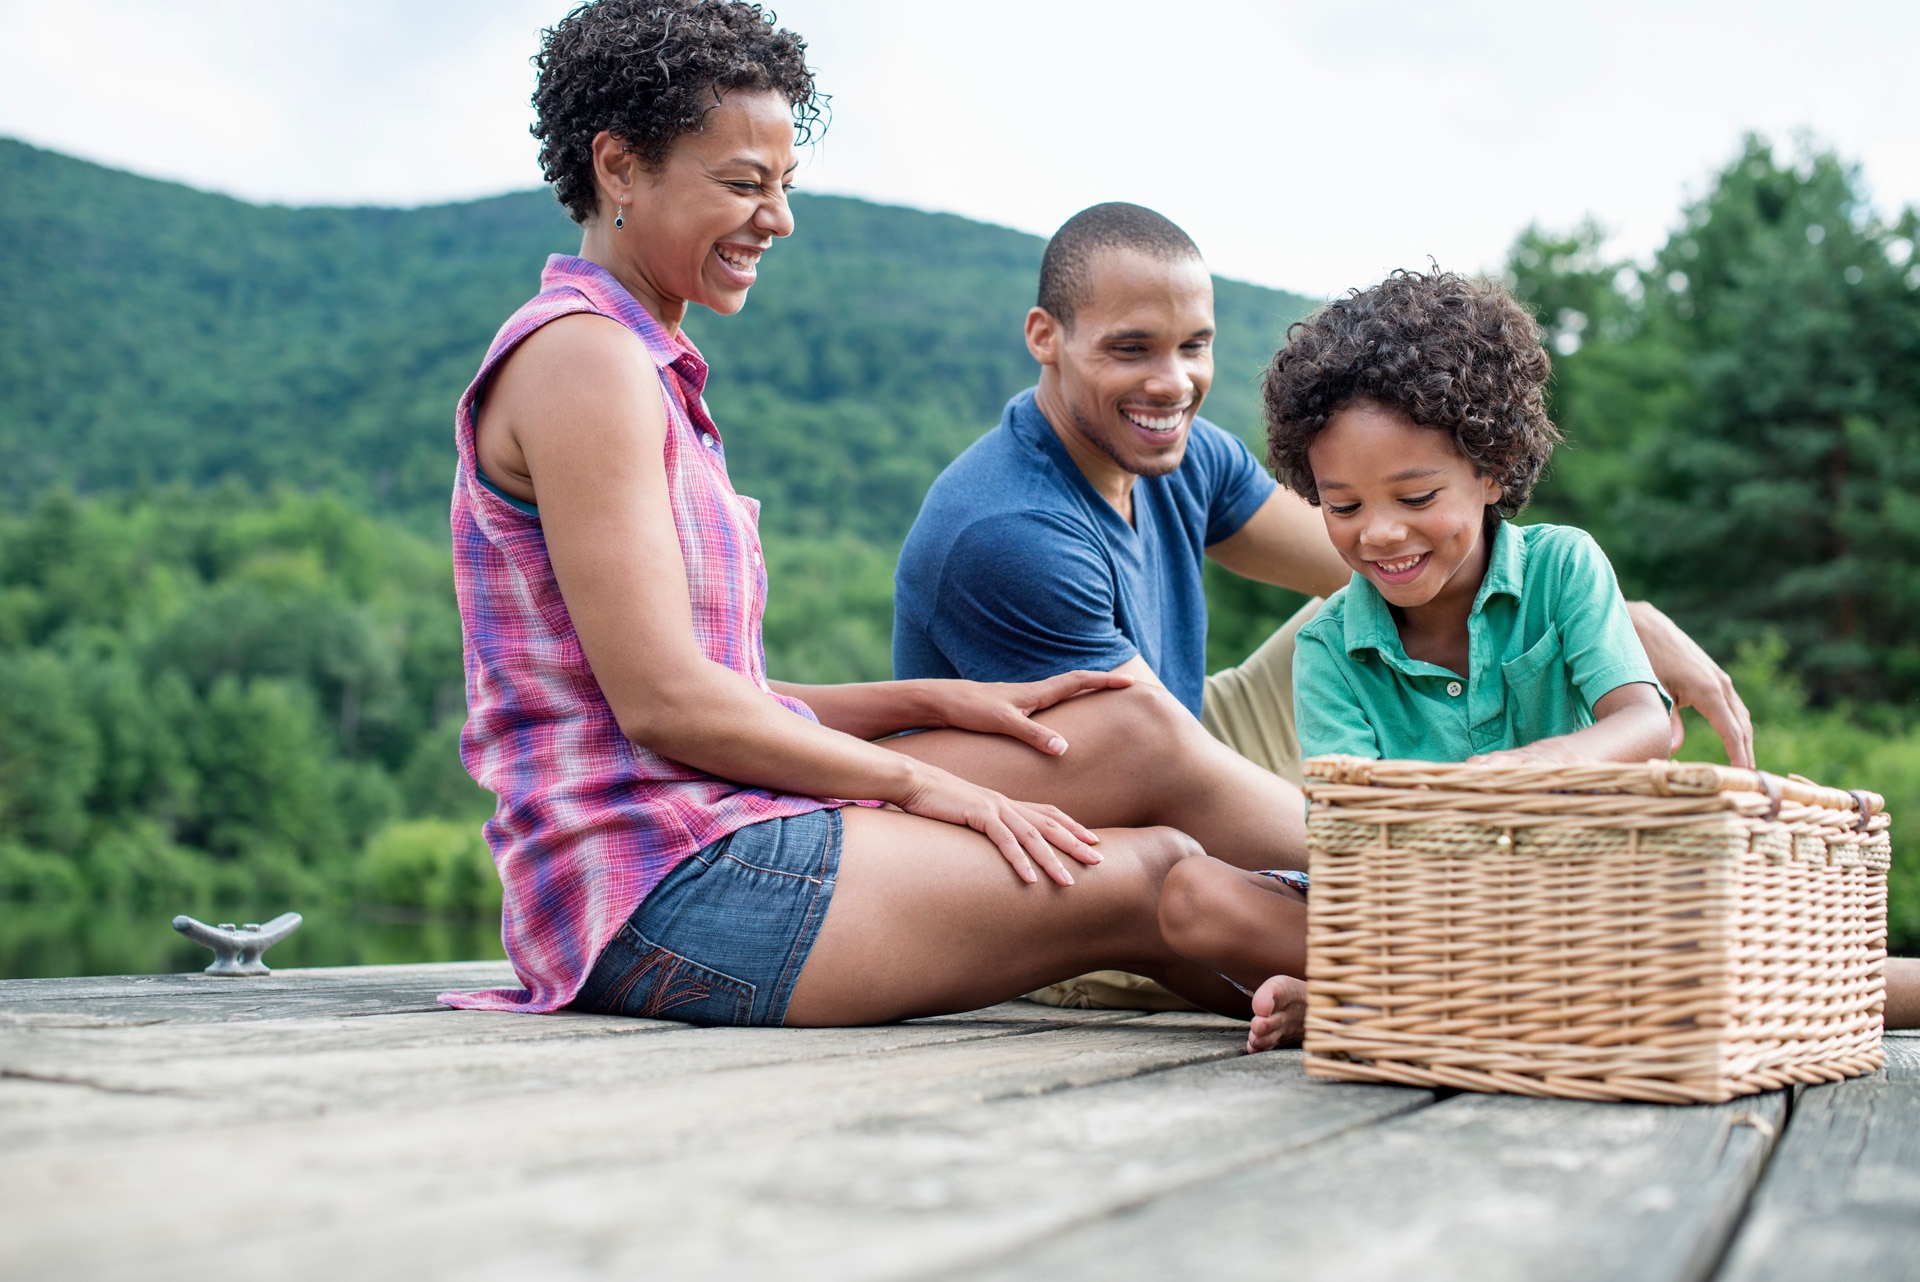 Family of three having a summer picnic at a lake.